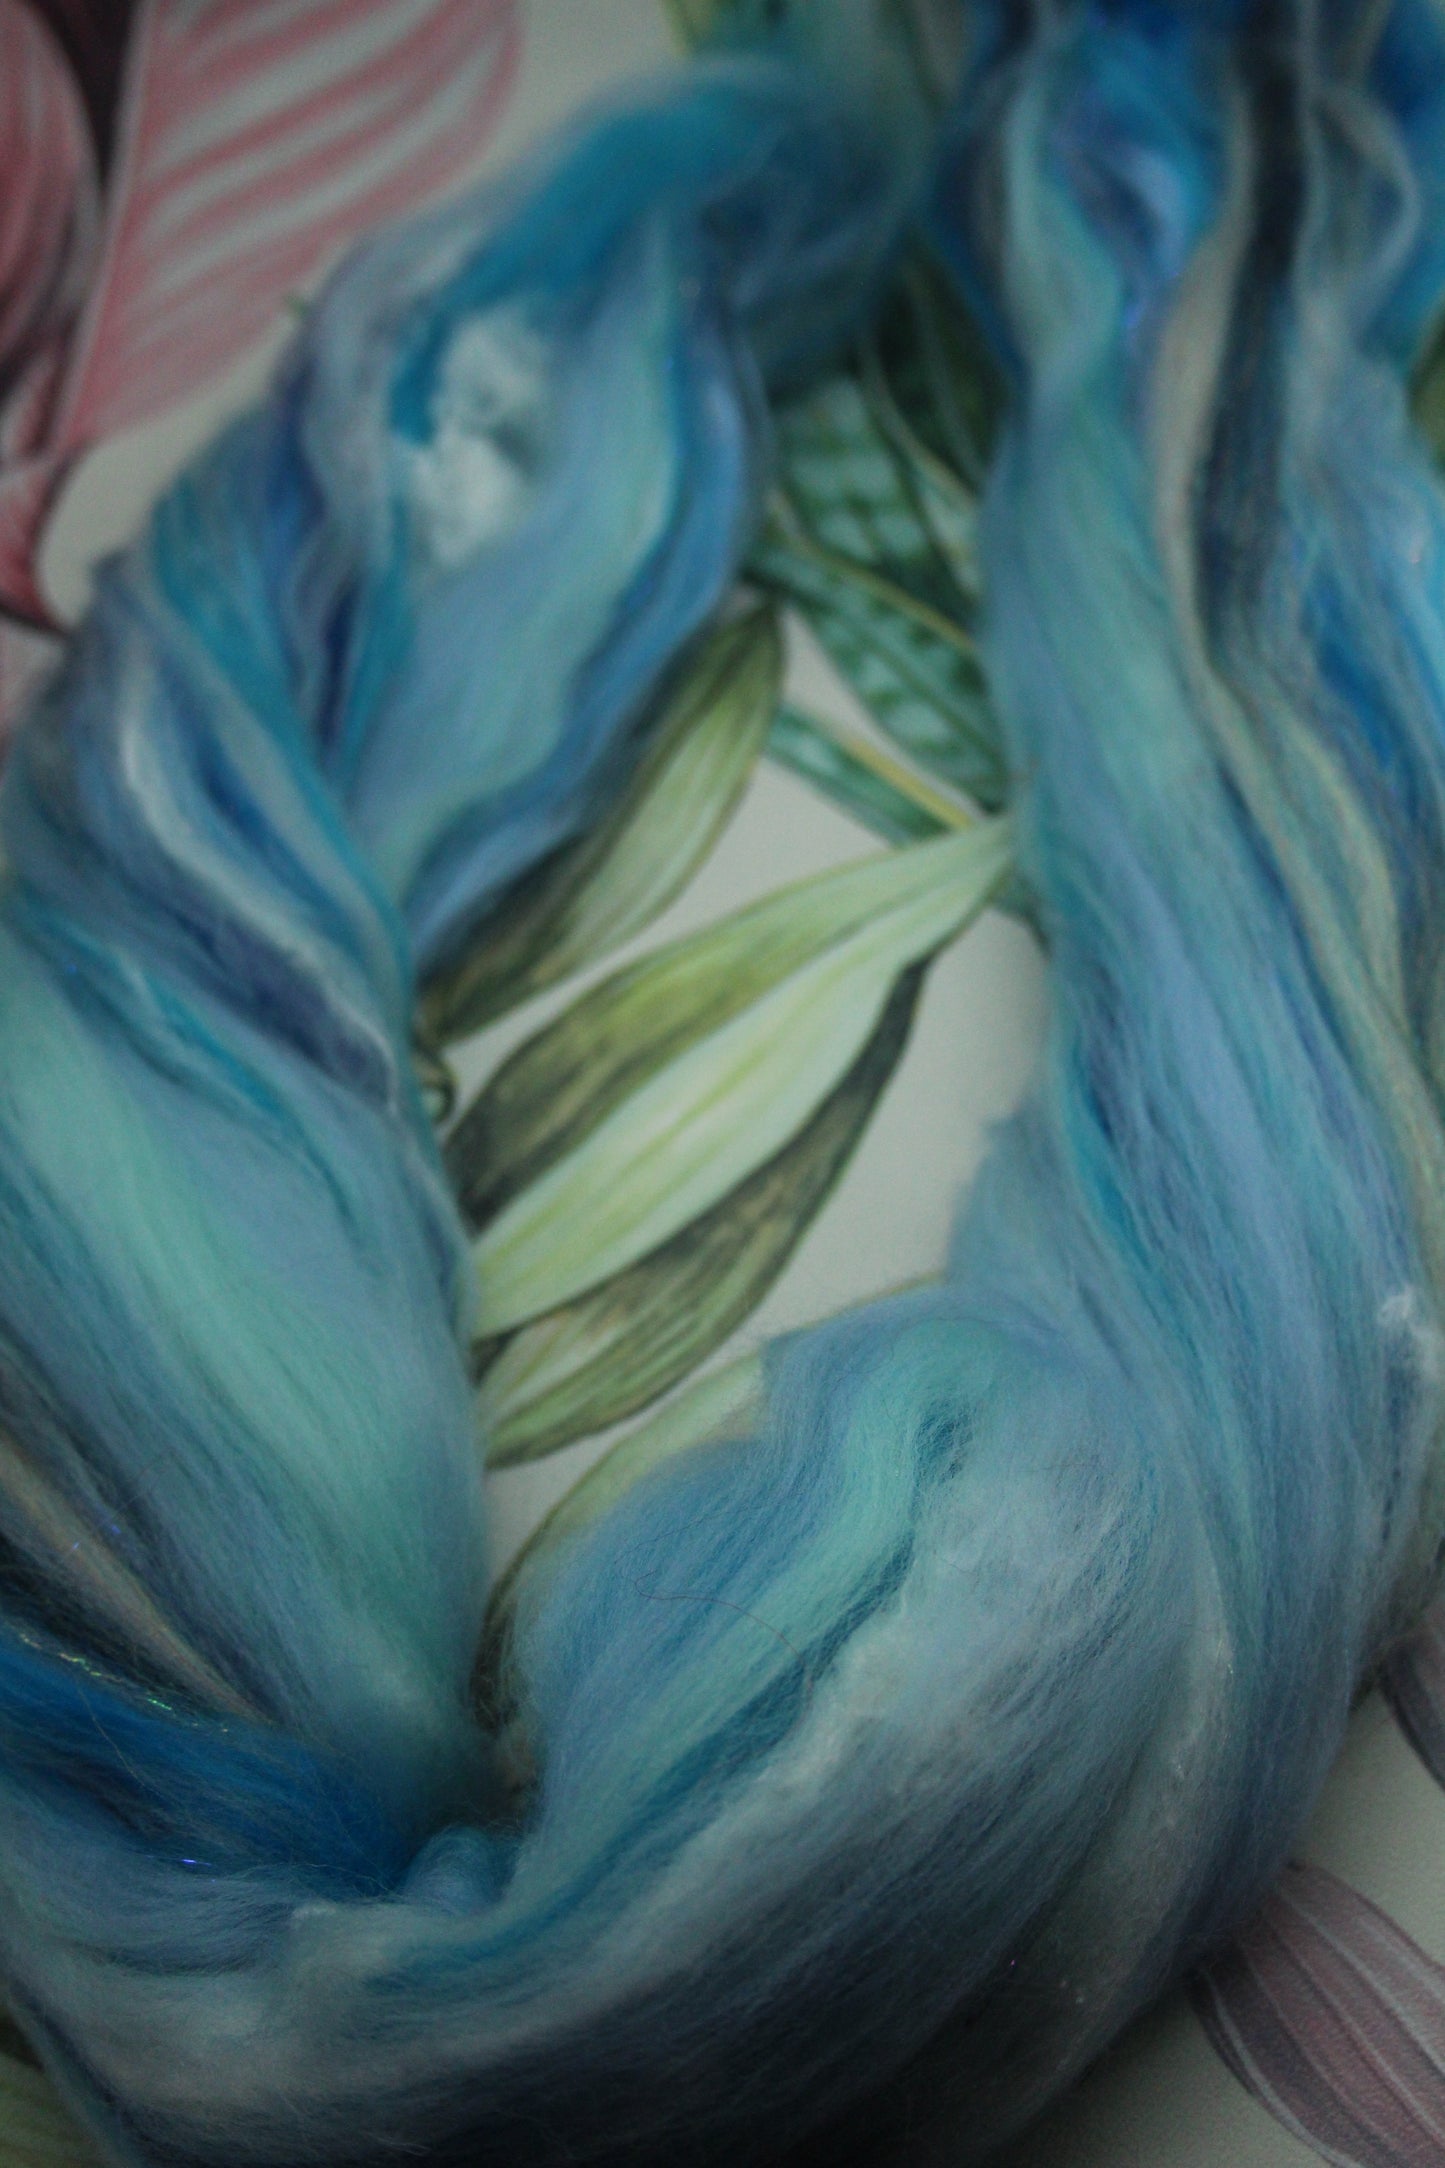 Wool Blend - Blue White - 35 grams / 1.2 oz  - Fibre for felting, weaving or spinning